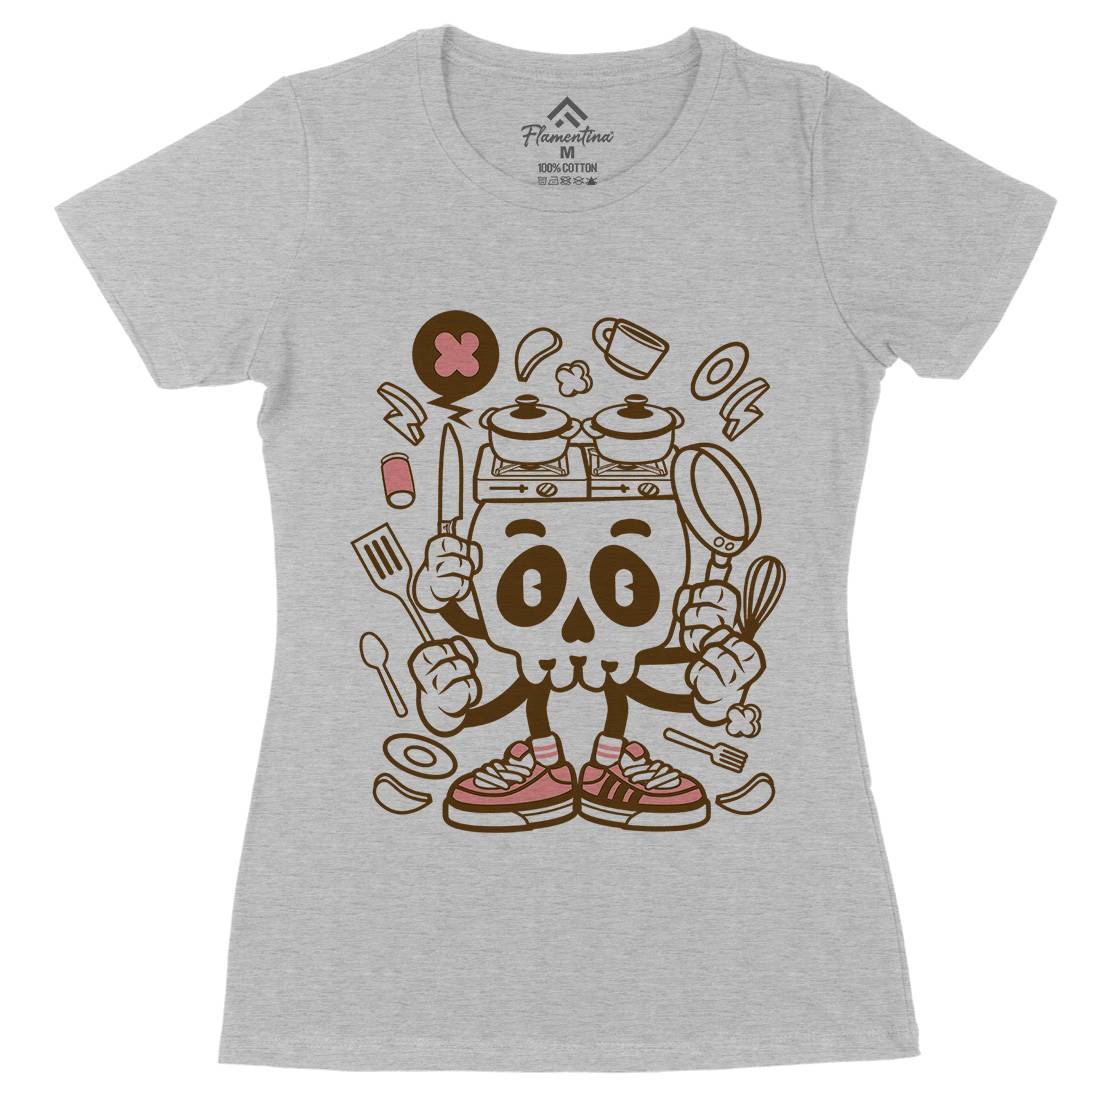 Cooking Skull Womens Organic Crew Neck T-Shirt Work C080